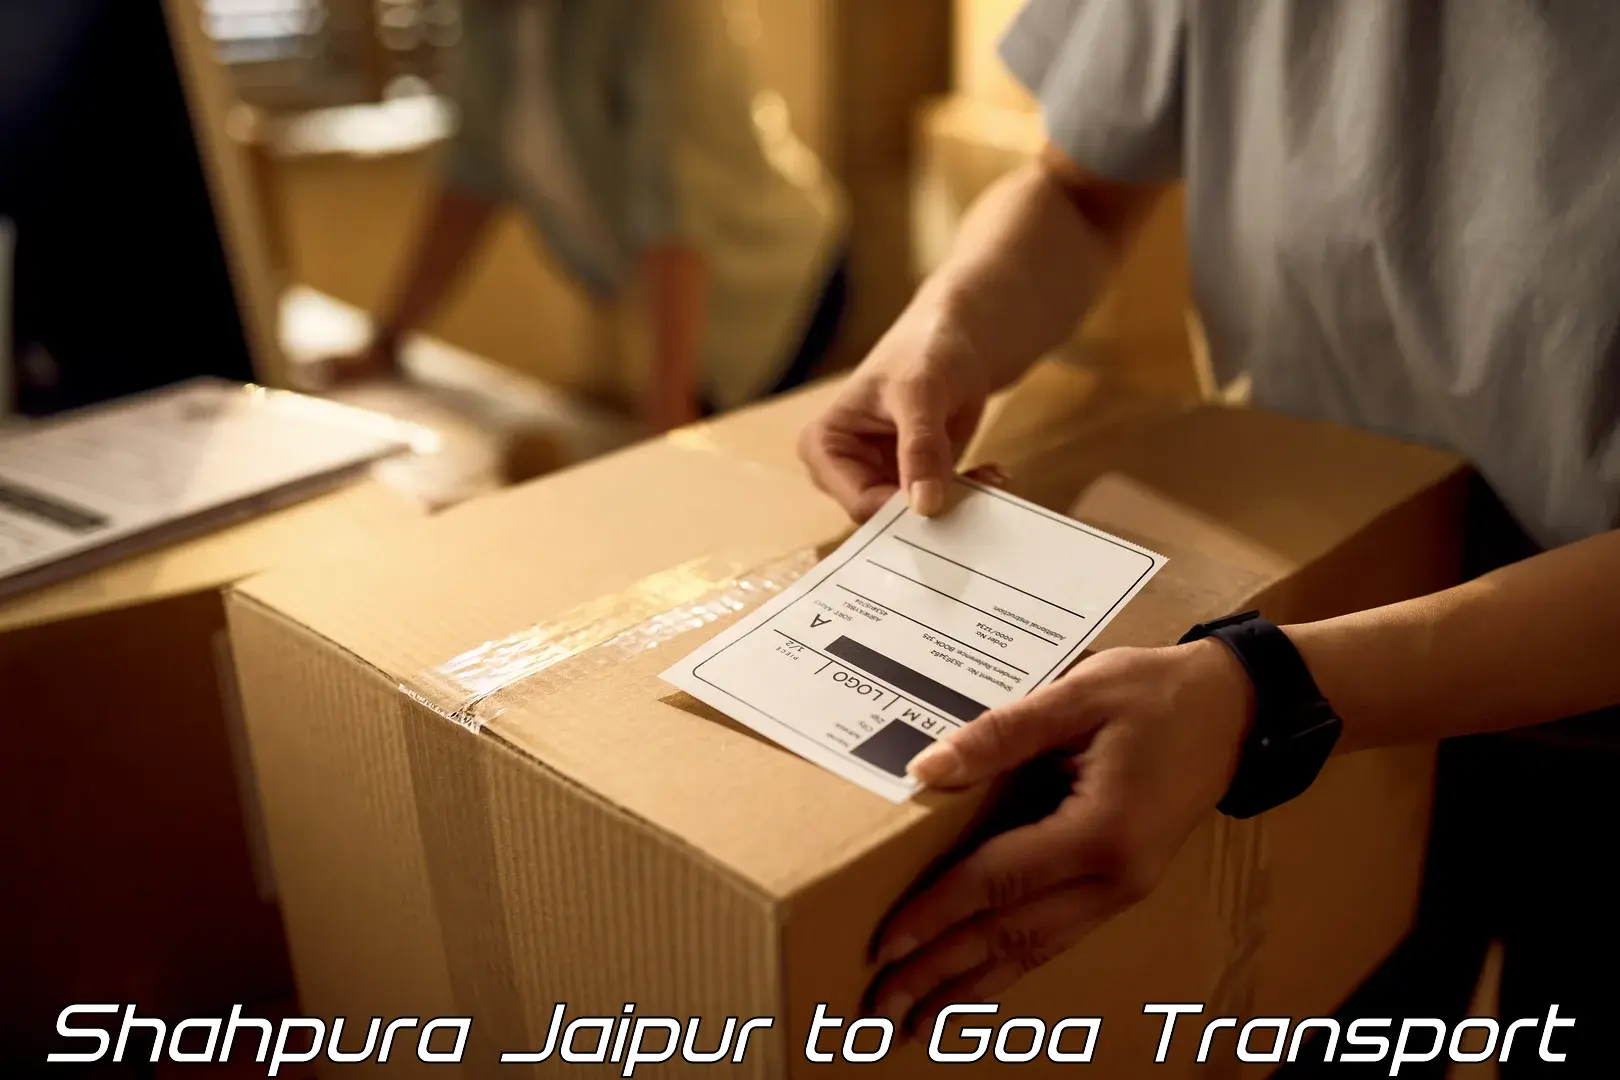 Transportation services Shahpura Jaipur to Goa